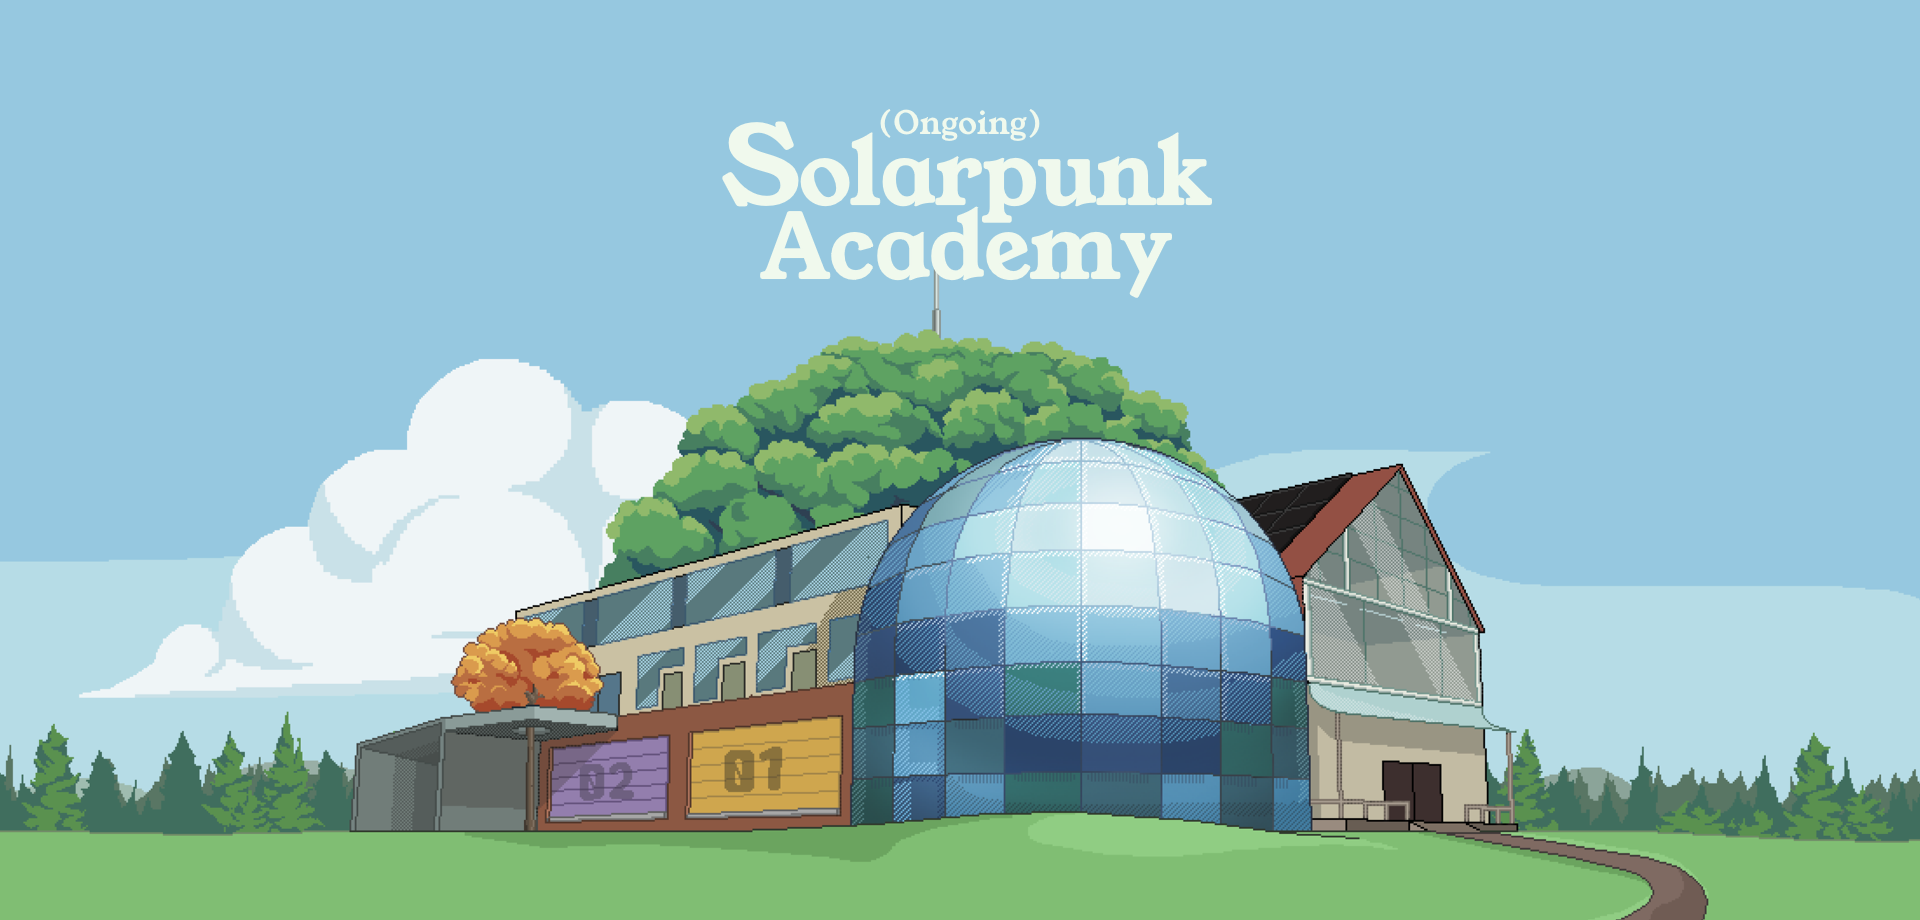 Solarpunk - Sustainable & Desirable Futures 